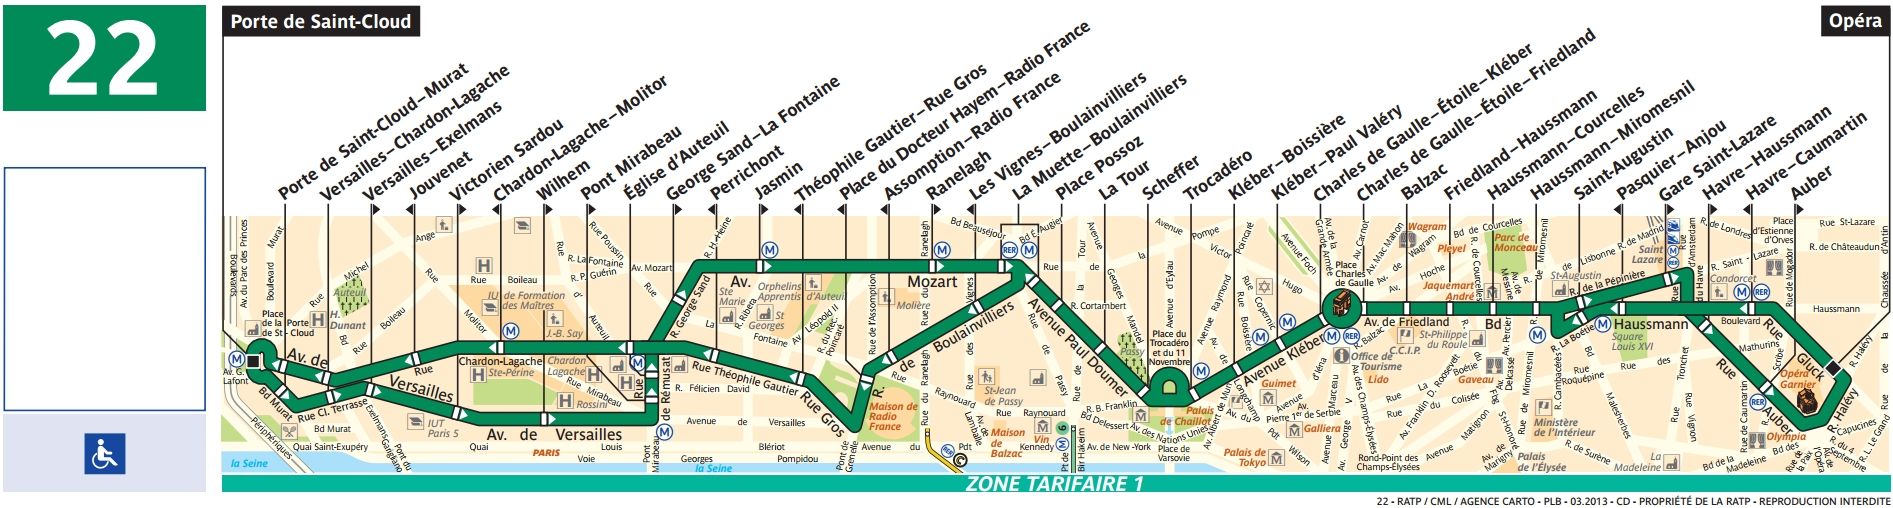 Plan Bus 22 Paris.